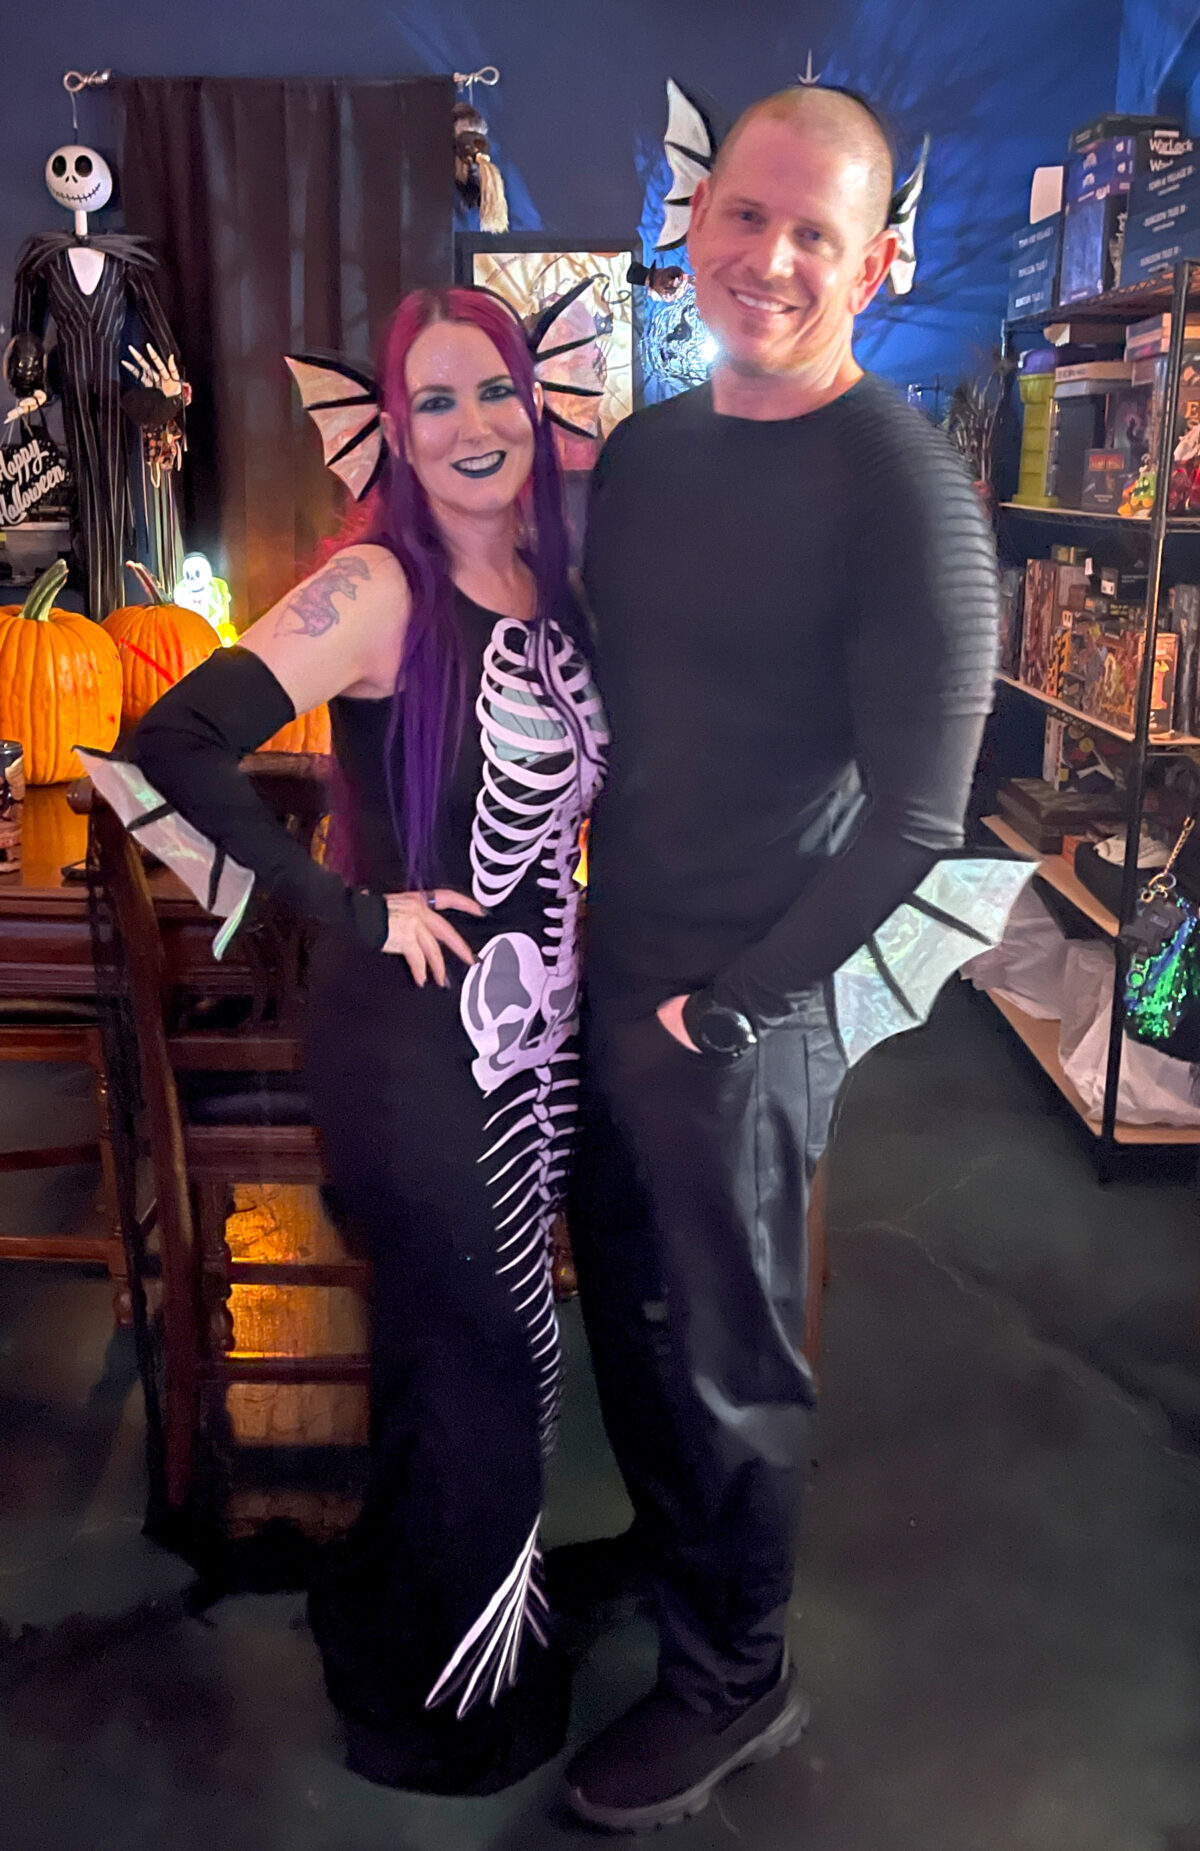 Cordelia and Dave dressed as mermaid skeletons